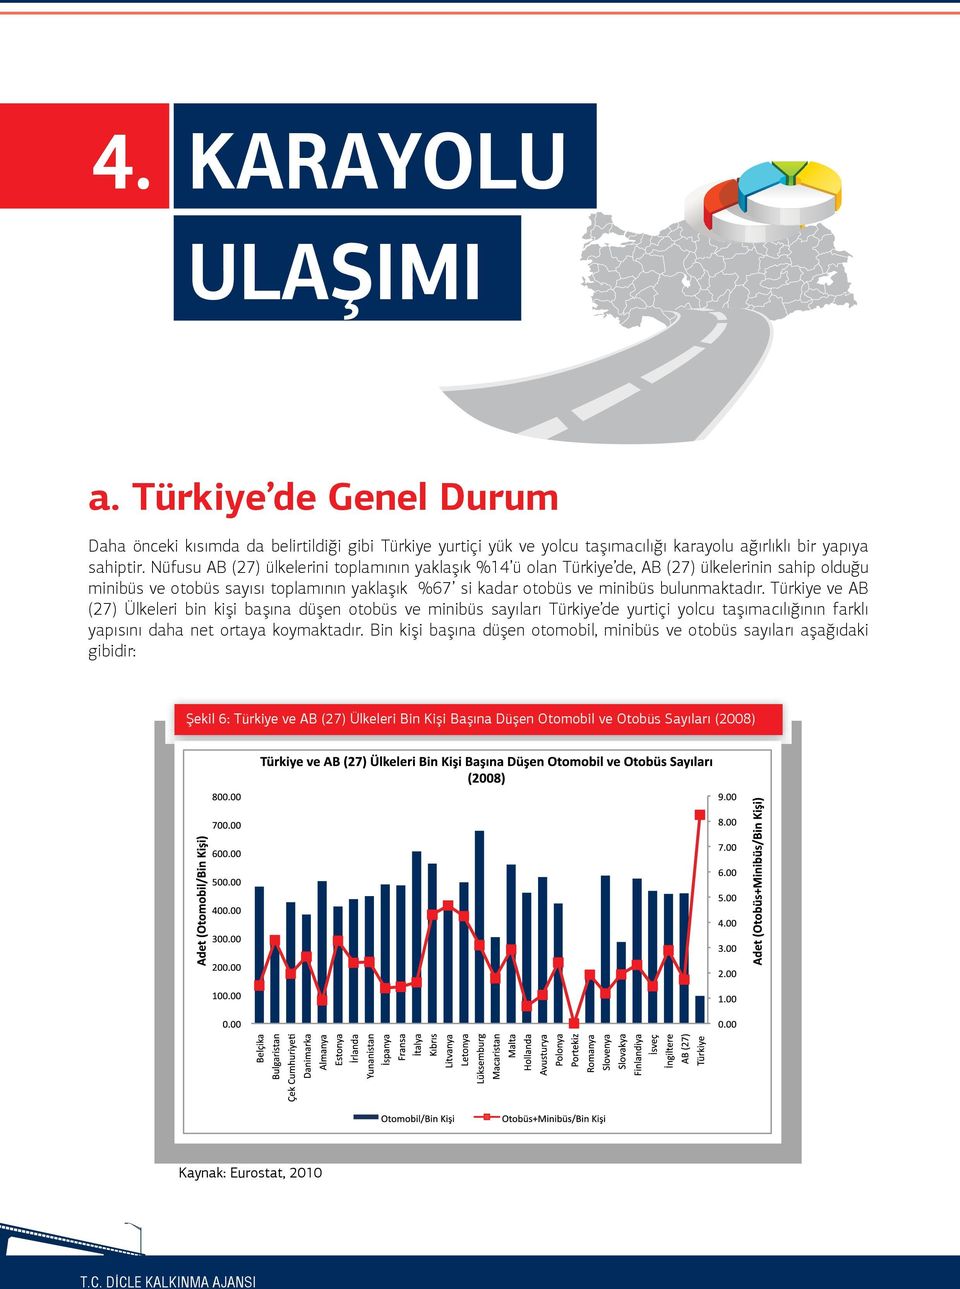 bulunmaktadır. Türkiye ve AB (27) Ülkeleri bin kişi başına düşen otobüs ve minibüs sayıları Türkiye de yurtiçi yolcu taşımacılığının farklı yapısını daha net ortaya koymaktadır.